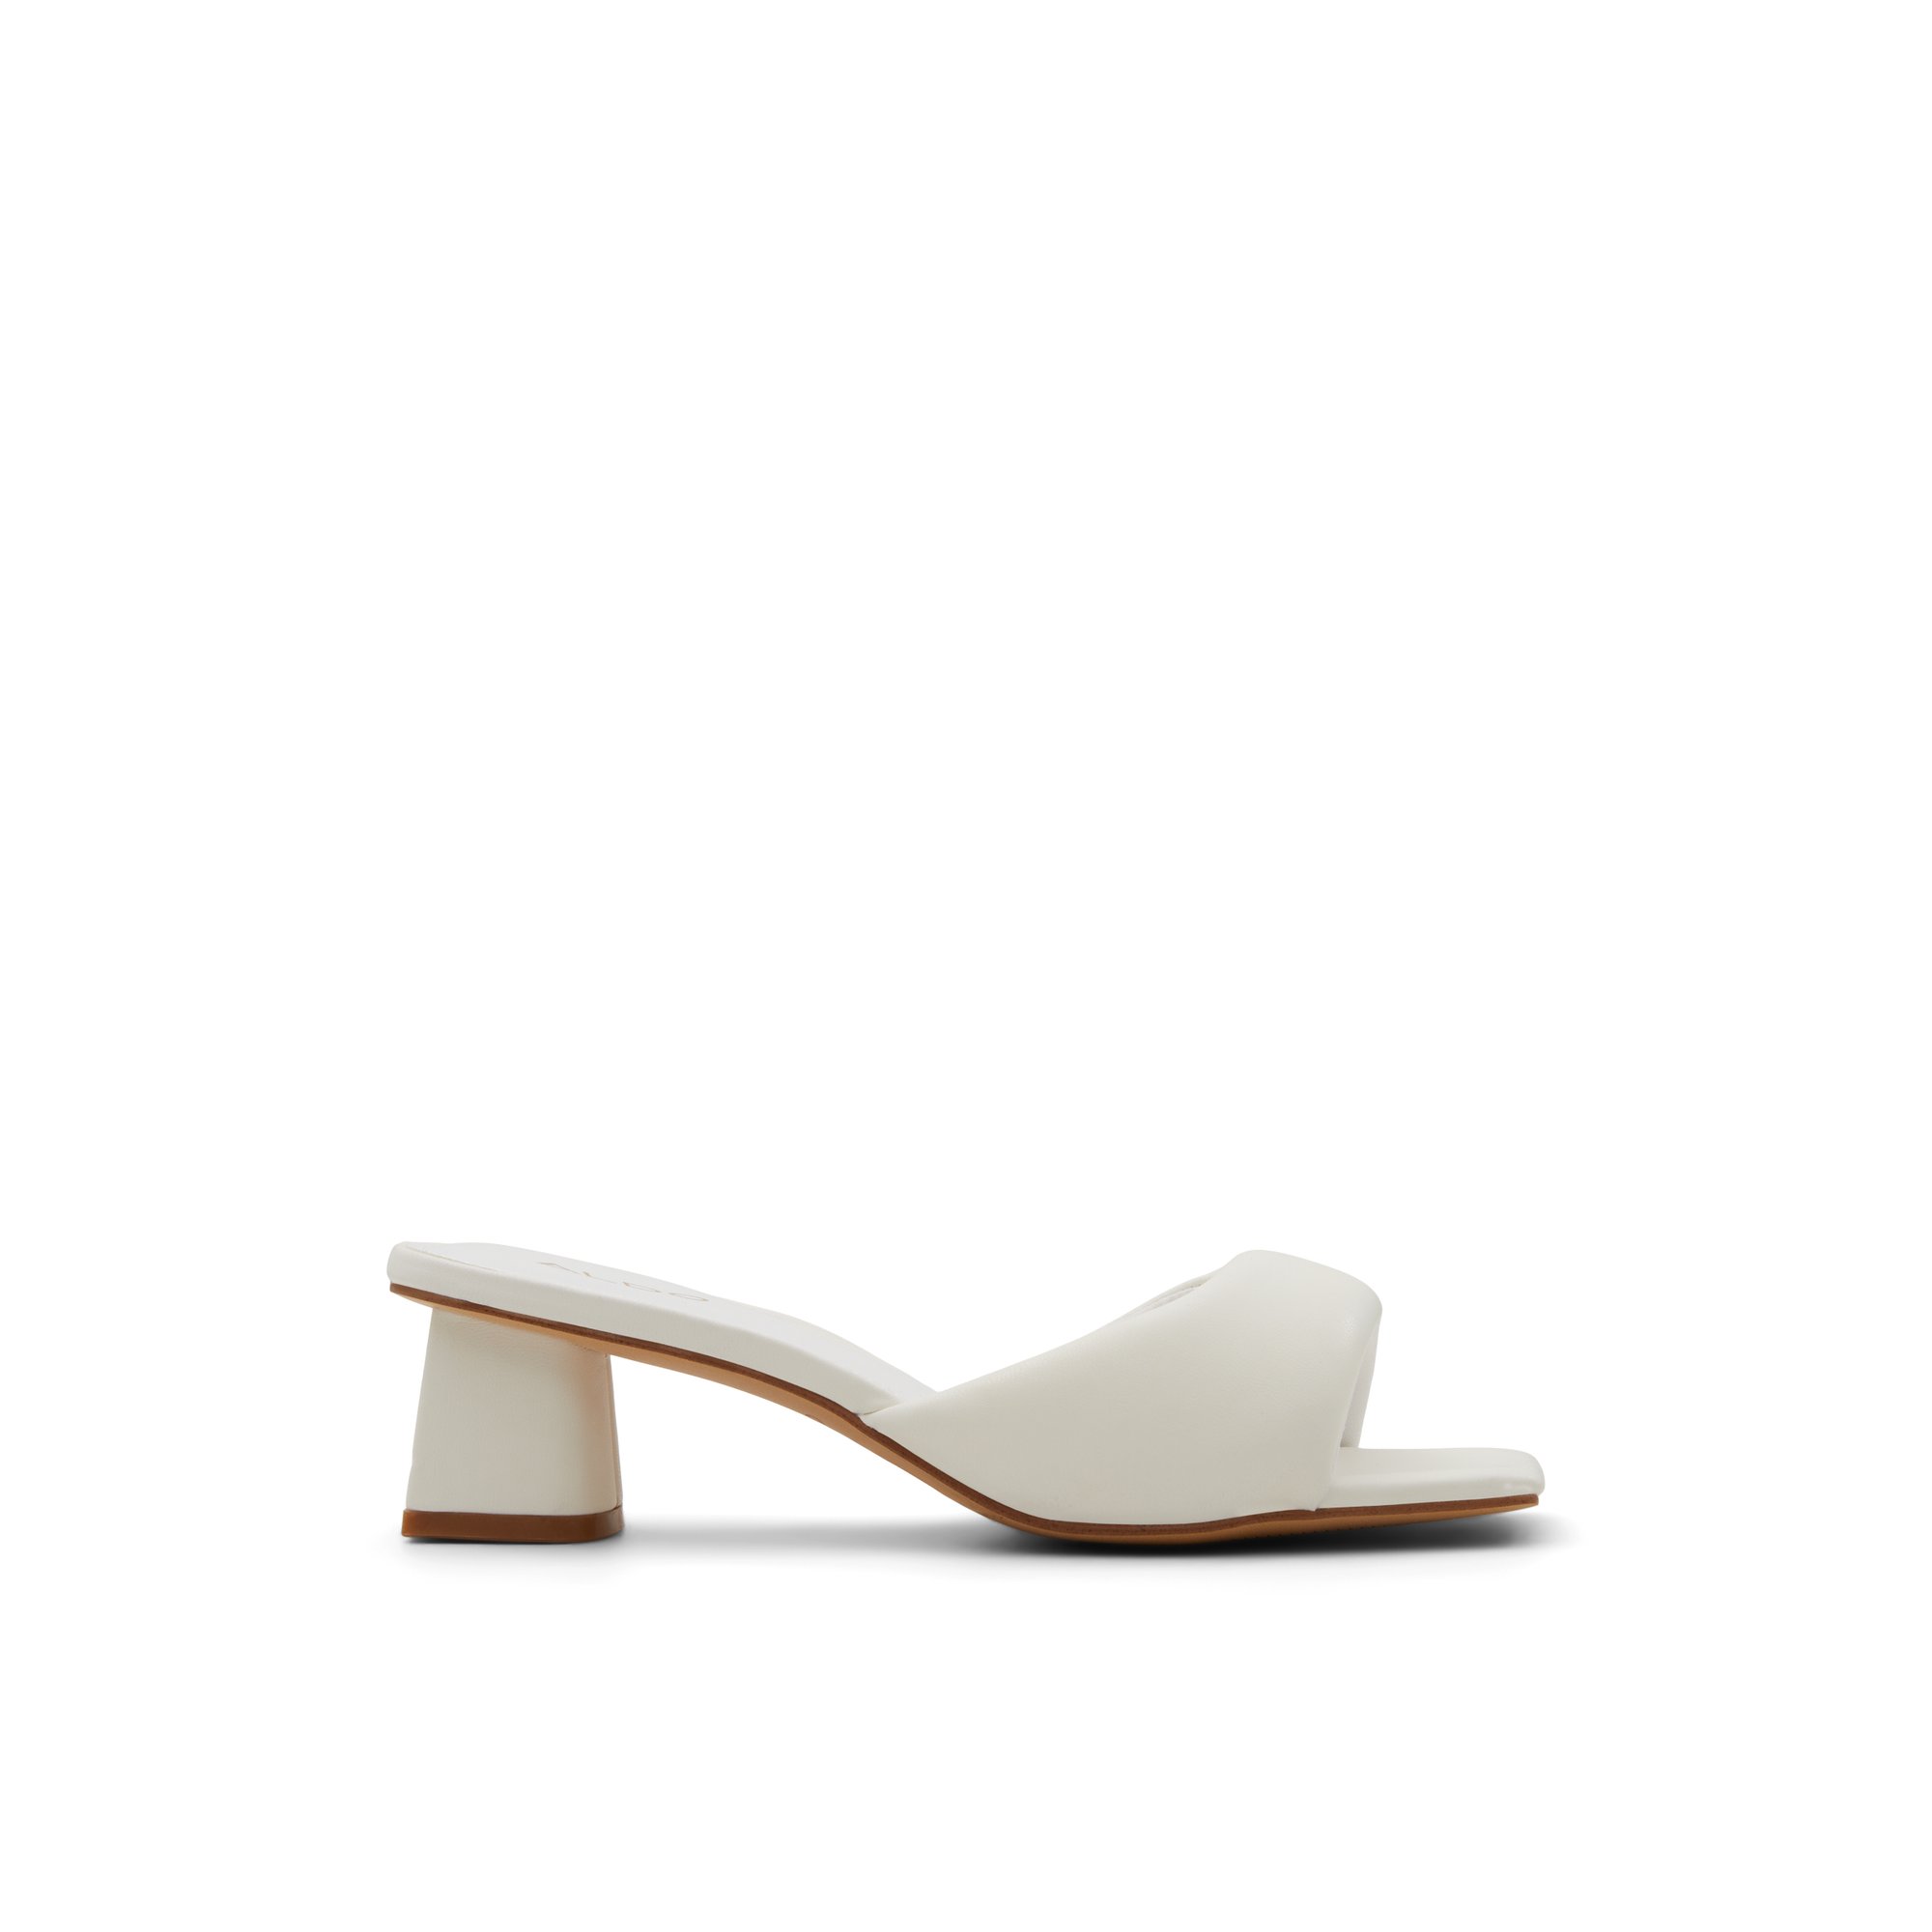 ALDO Aneka - Women's Mule Slides - White